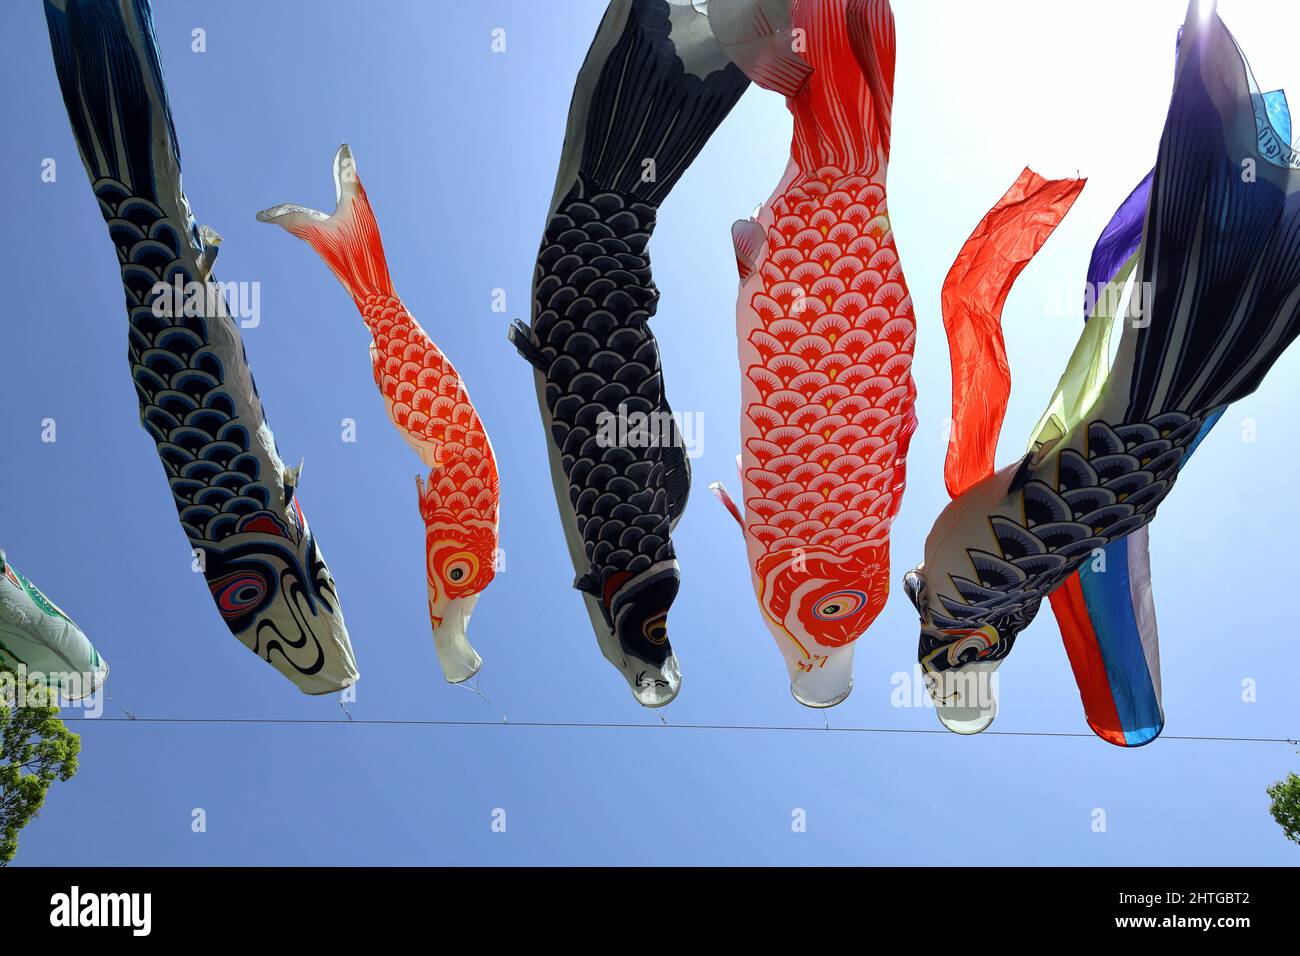 14 Koi Fish iPhone Wallpapers  Wallpaperboat